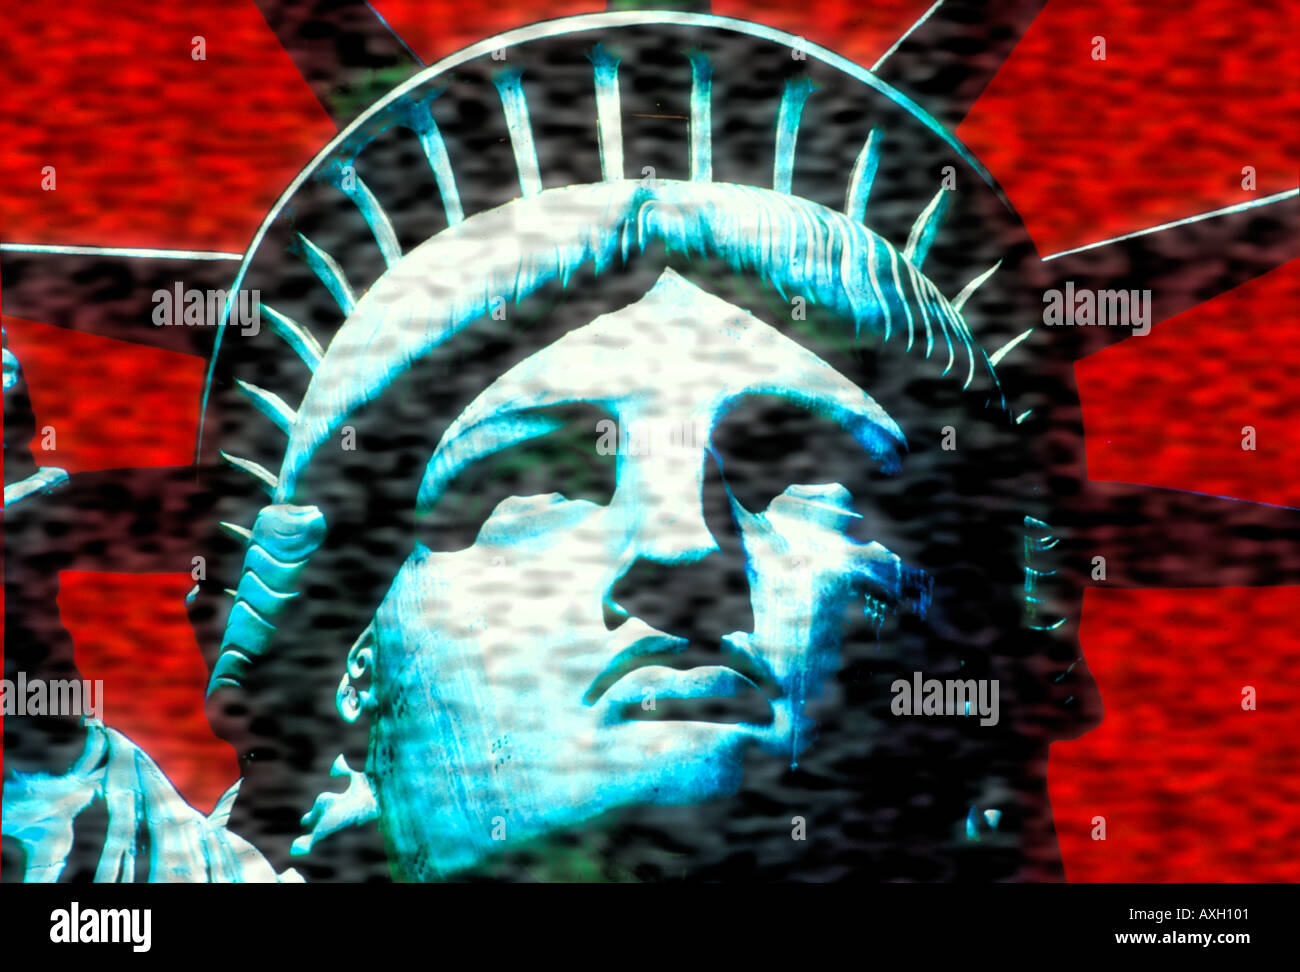 abstrakte Darstellung der New Yorker Freiheitsstatue USA Konzept Stockfoto